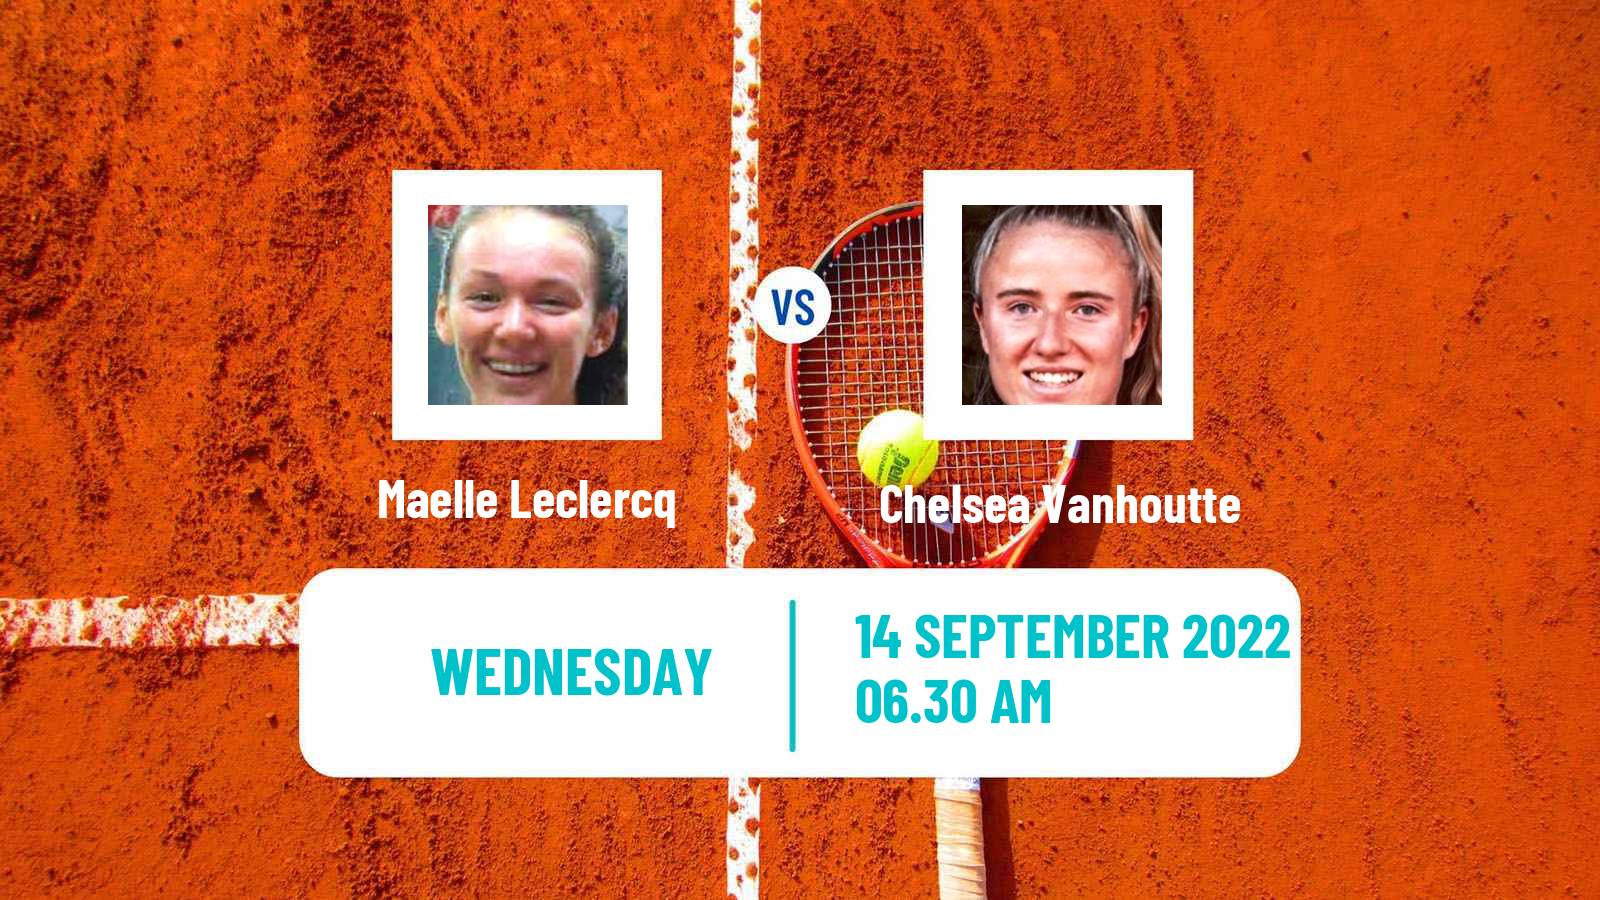 Tennis ITF Tournaments Maelle Leclercq - Chelsea Vanhoutte